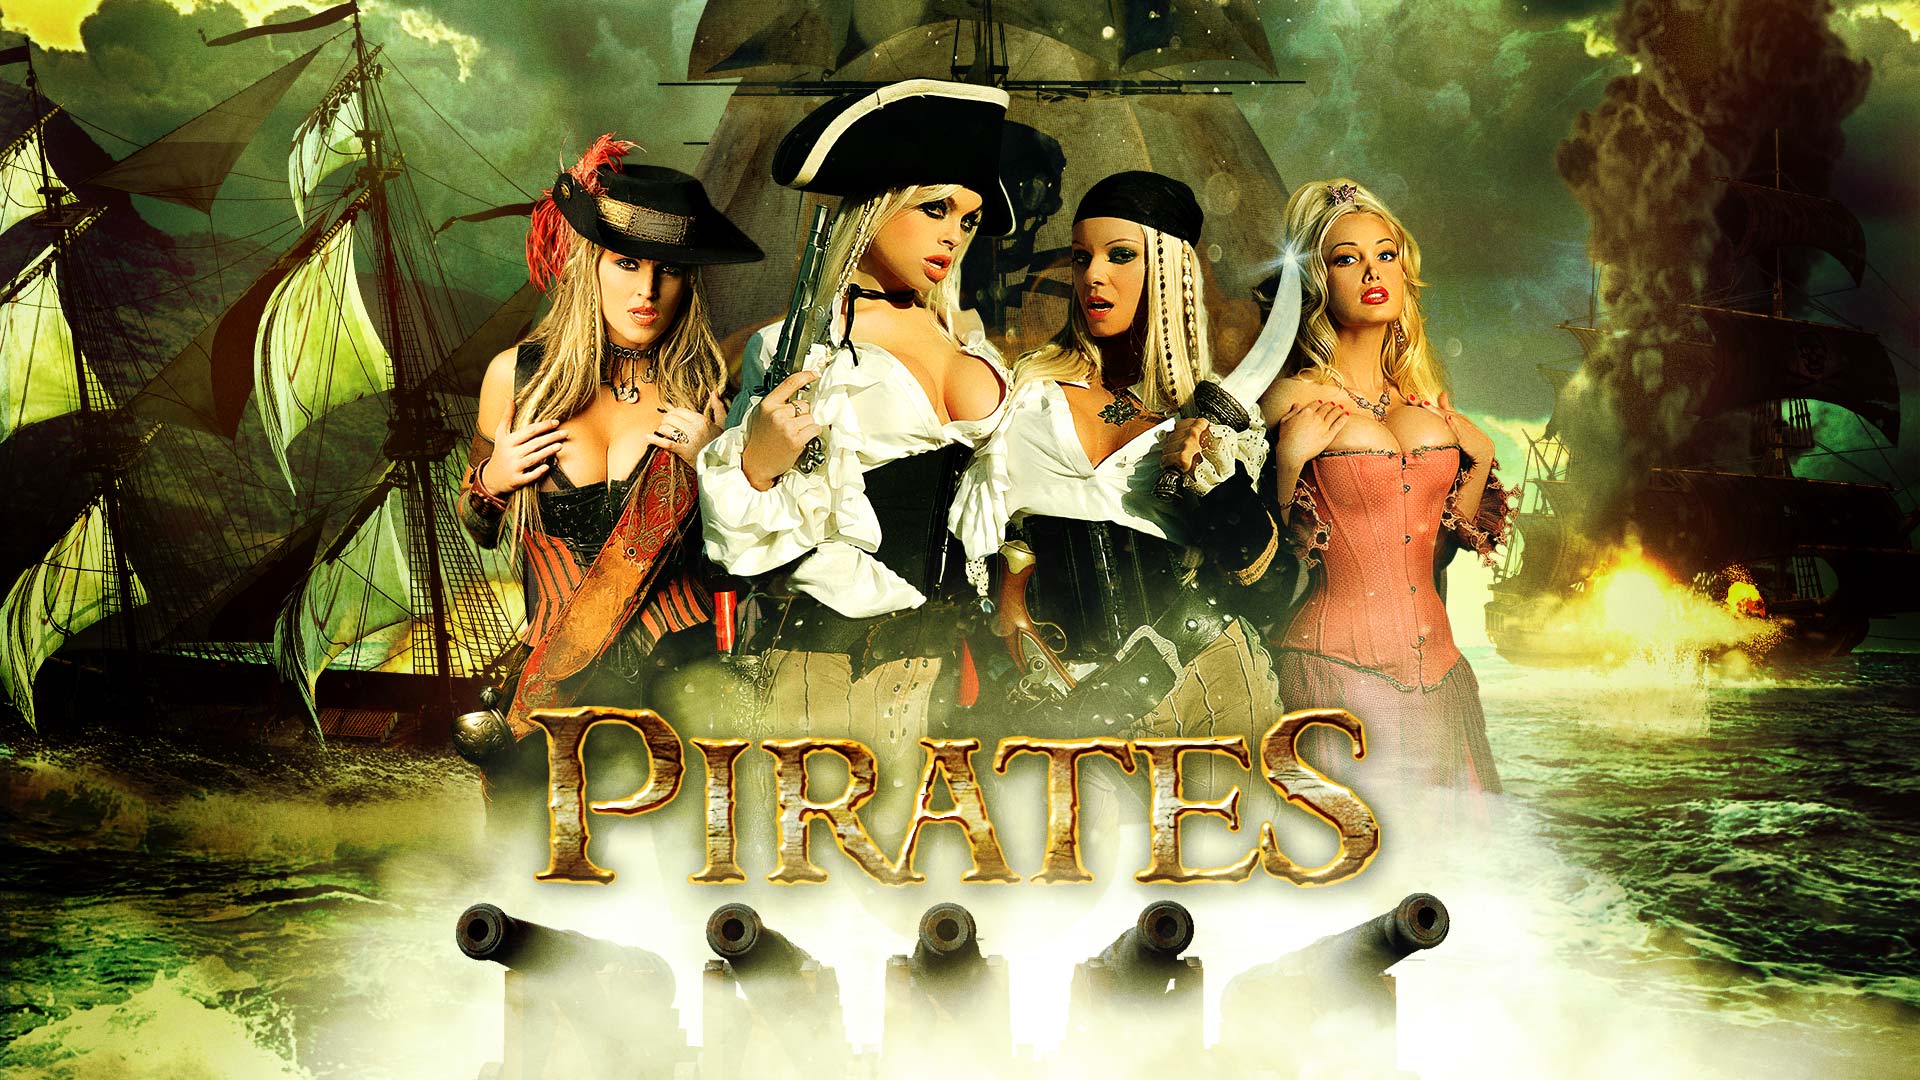 Digital playground pirates movie